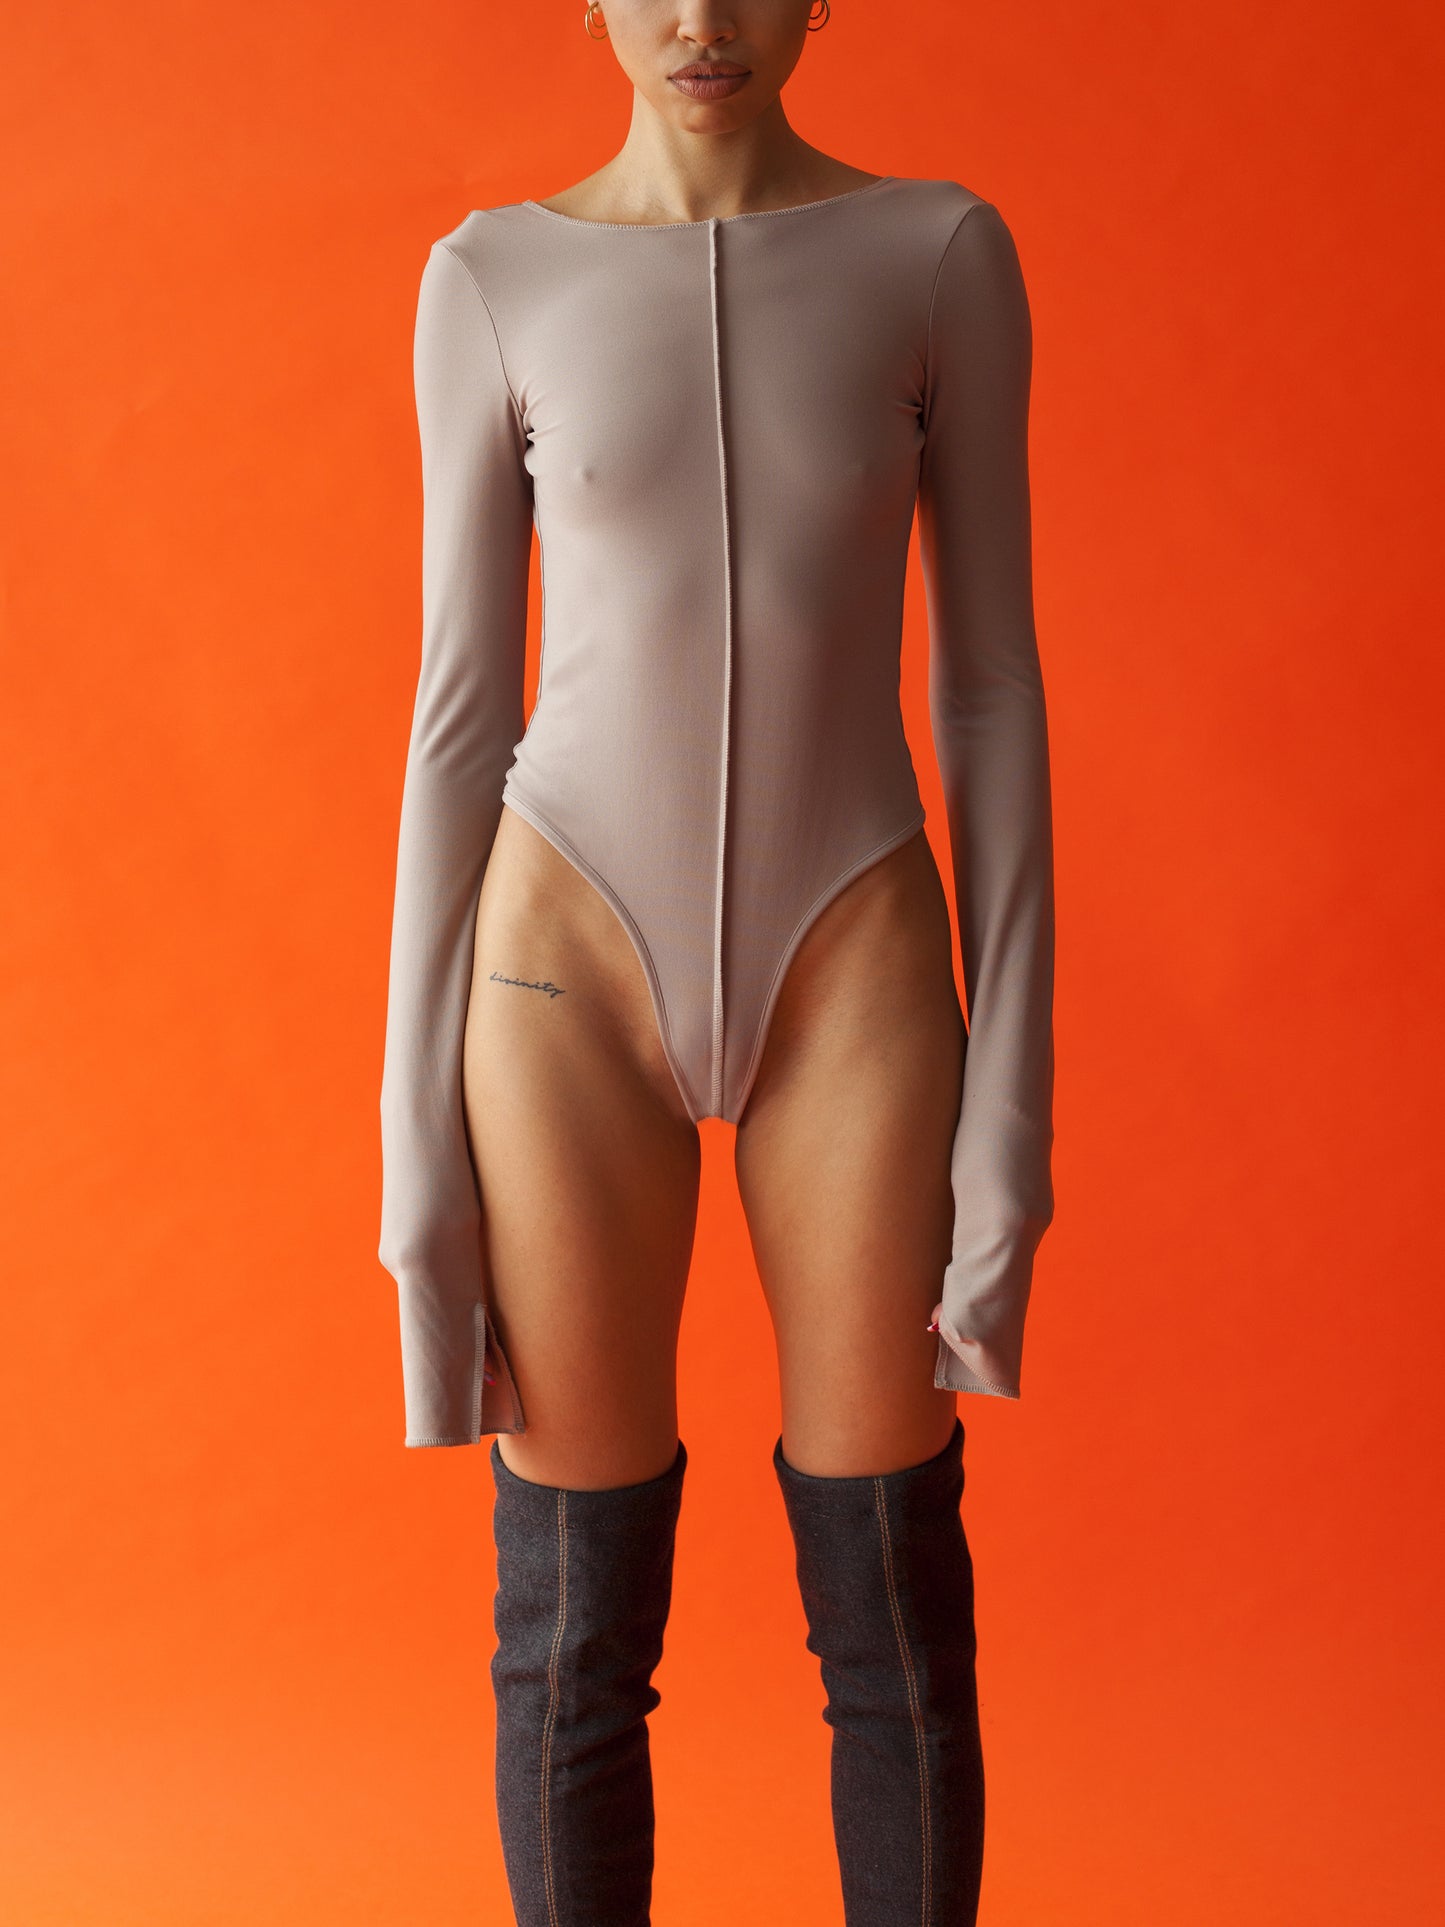 MERAKI bodysuit - cocoa 2.0